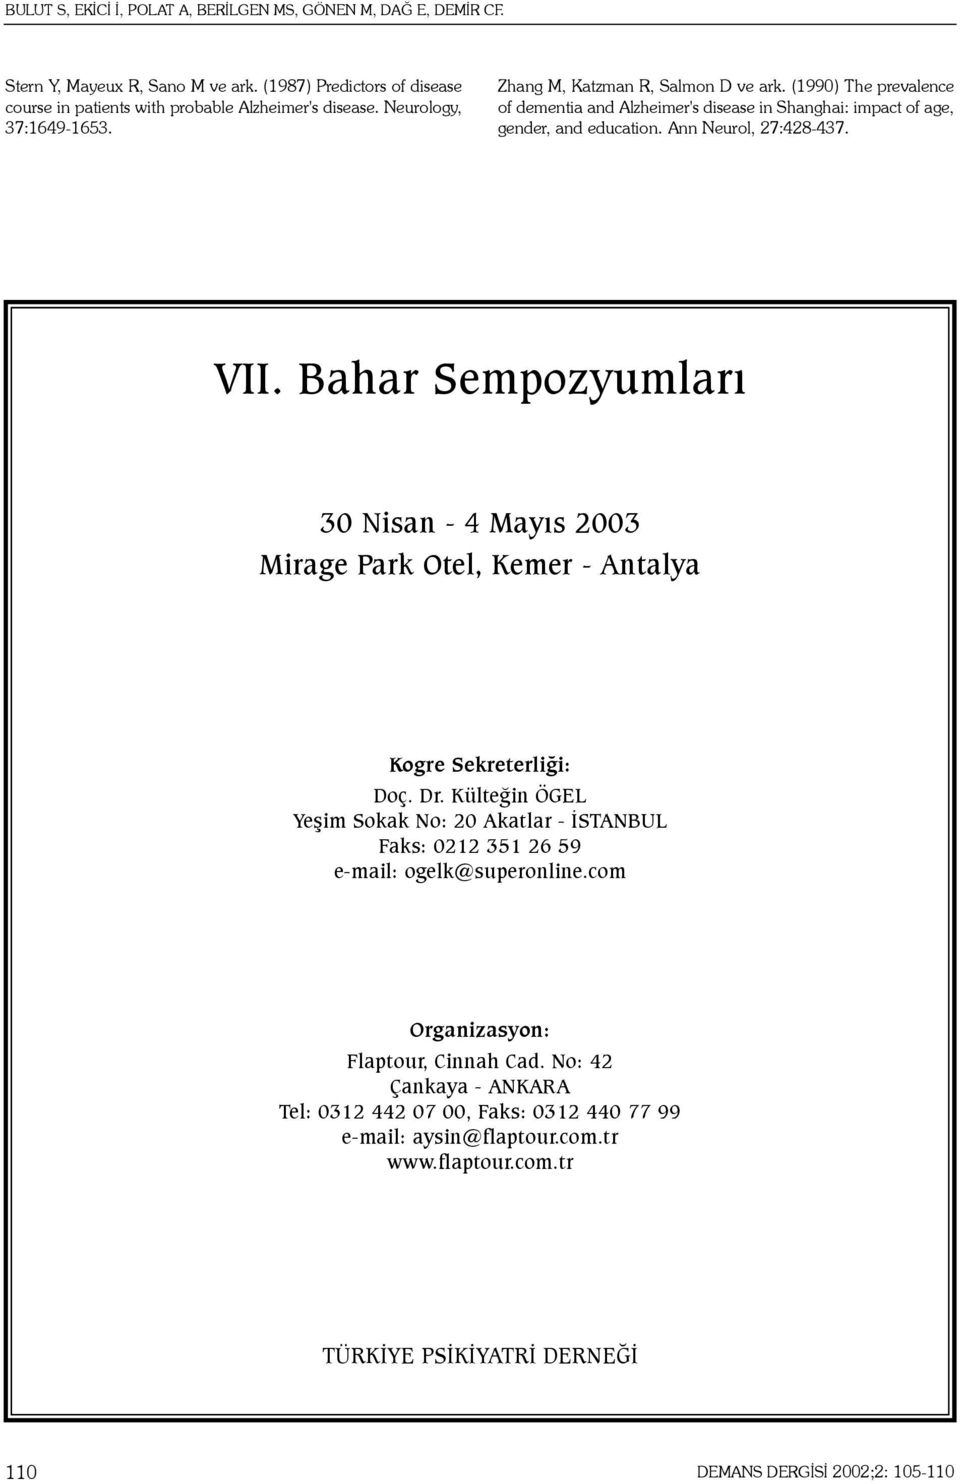 VII. Bahar Sempozyumlarý 30 Nisan - 4 Mayýs 2003 Mirage Park Otel, Kemer - Antalya Kogre Sekreterliði: Doç. Dr.